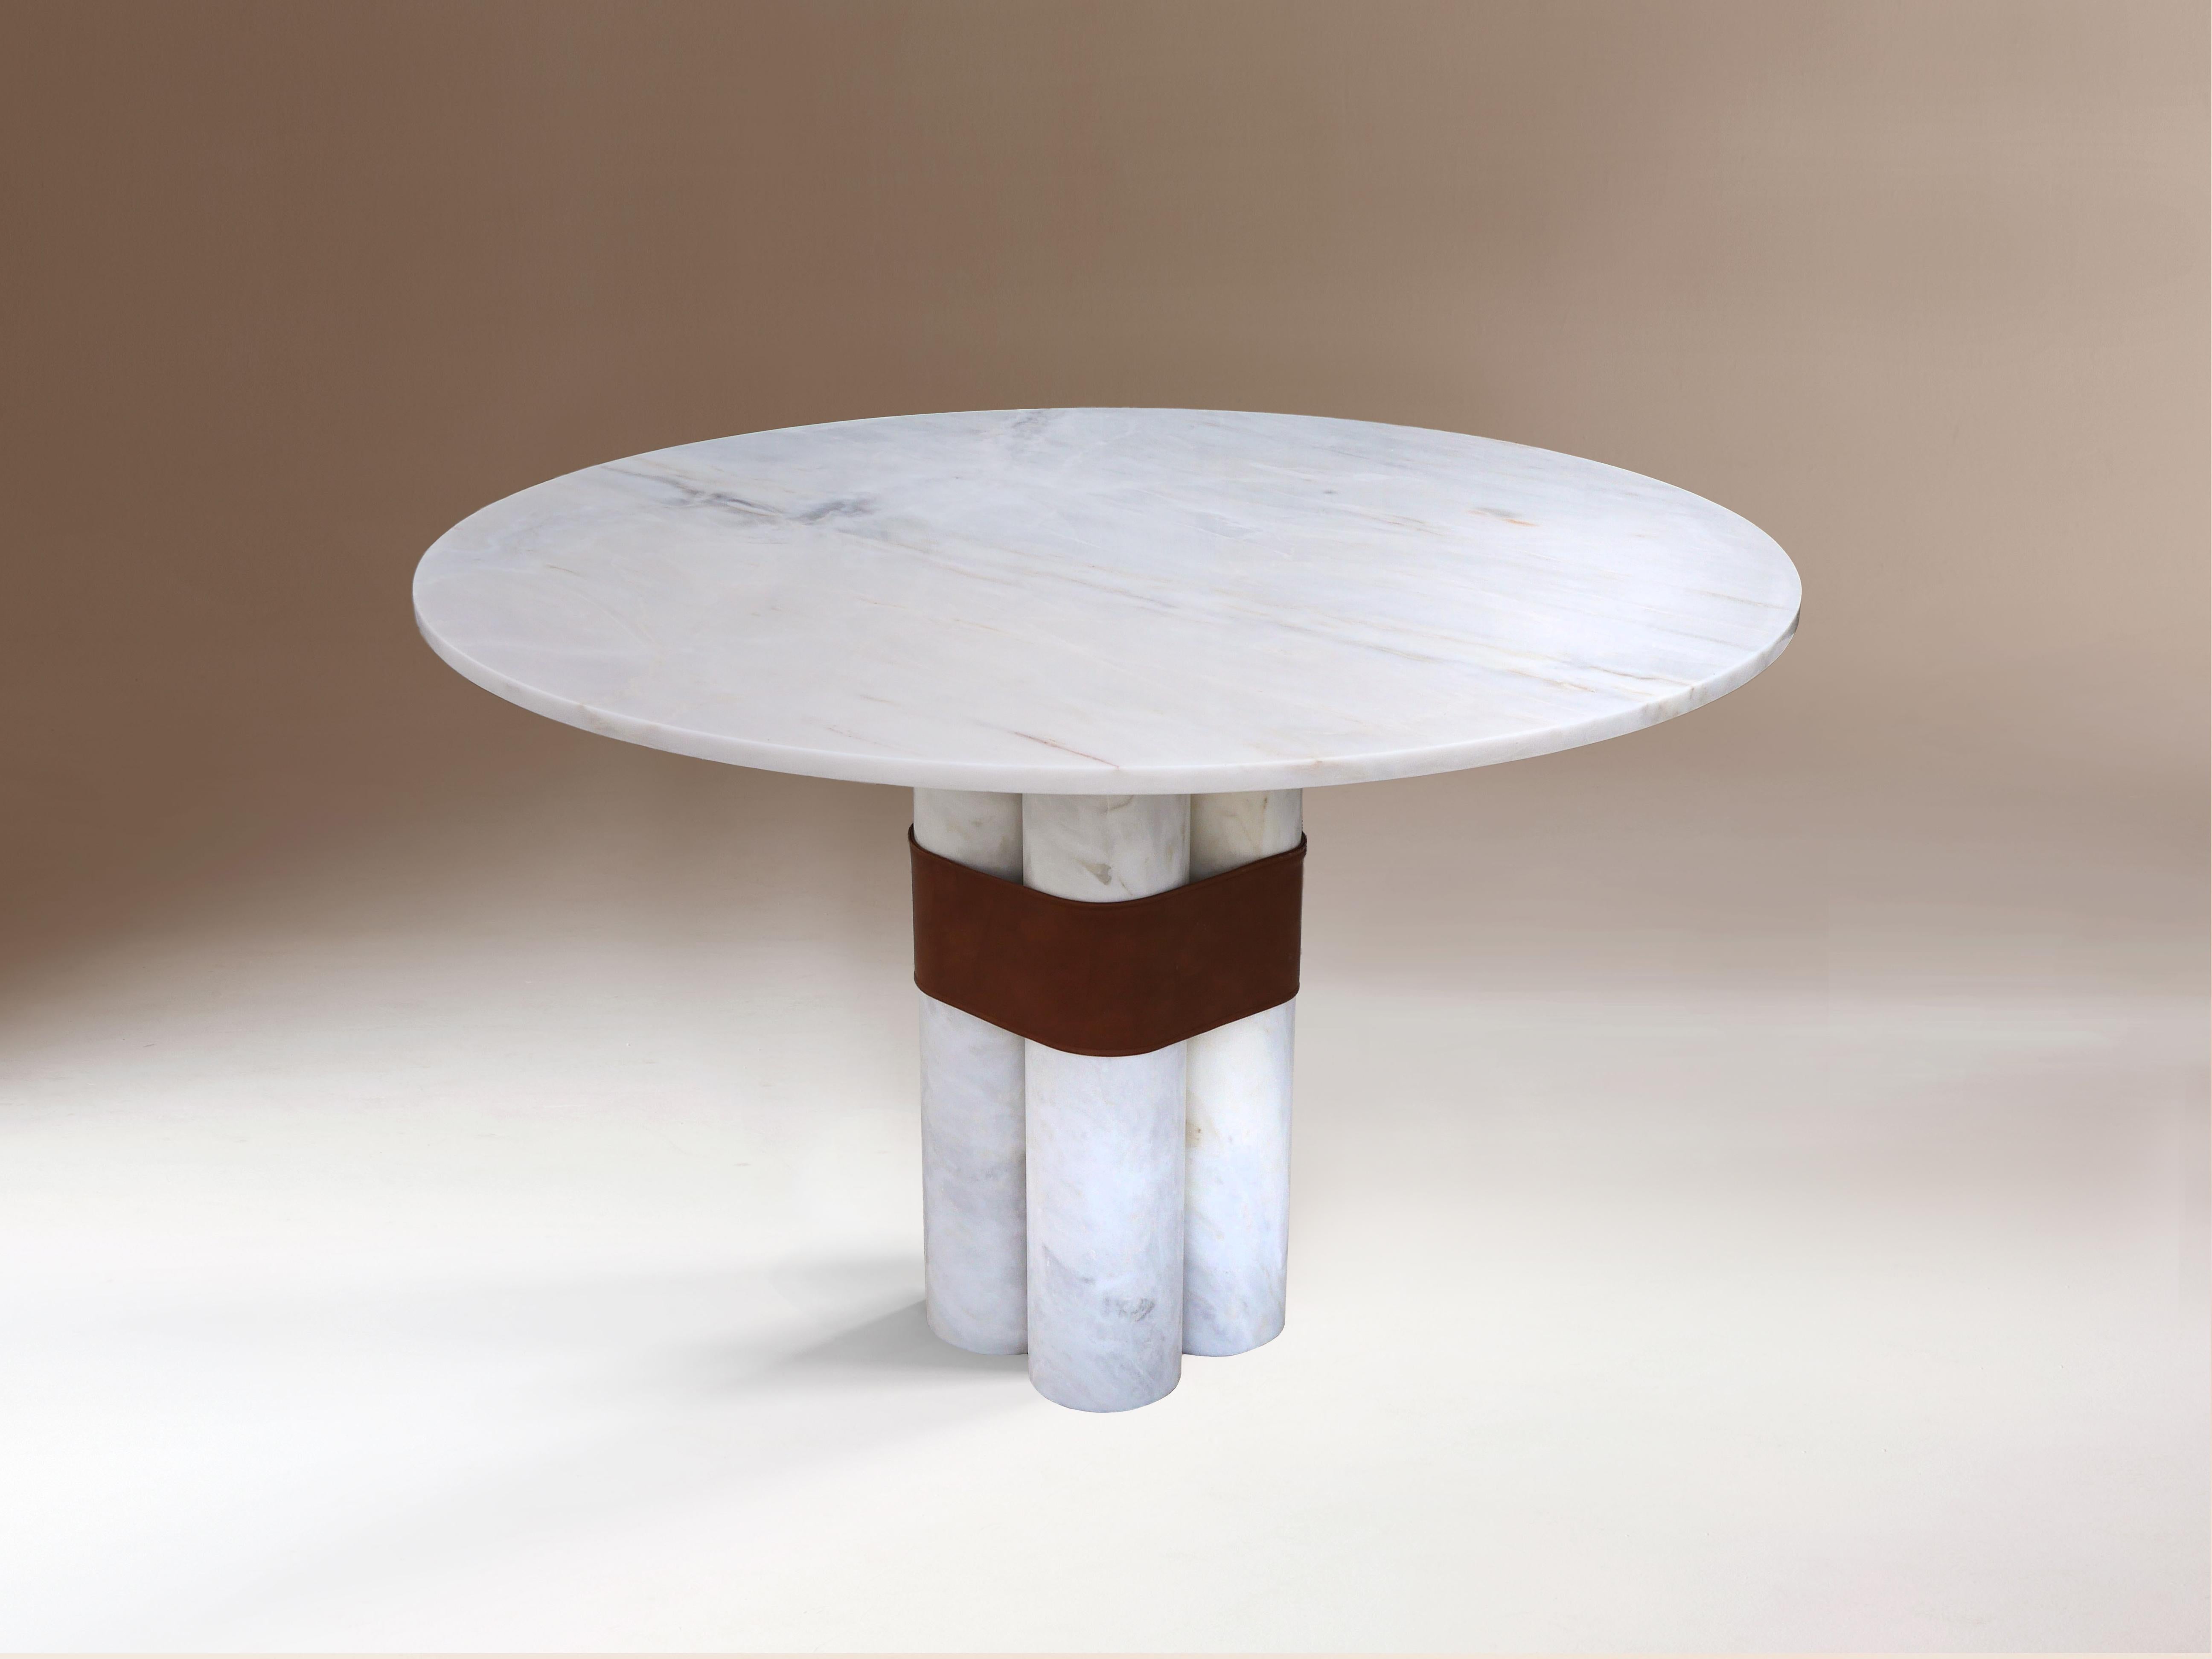 Table d'appoint Axis par DOVAIN STUDIO
Dimensions : H 60 x Ø 60 cm
MATERIAL : Marbre blanc d'Estremoz, cuir écologique

DOVAIN STUDIO
Directional de Sergio Prieto, artiste-designer espagnol né à Talavera de la Reina en 1994. Il s'est consacré au